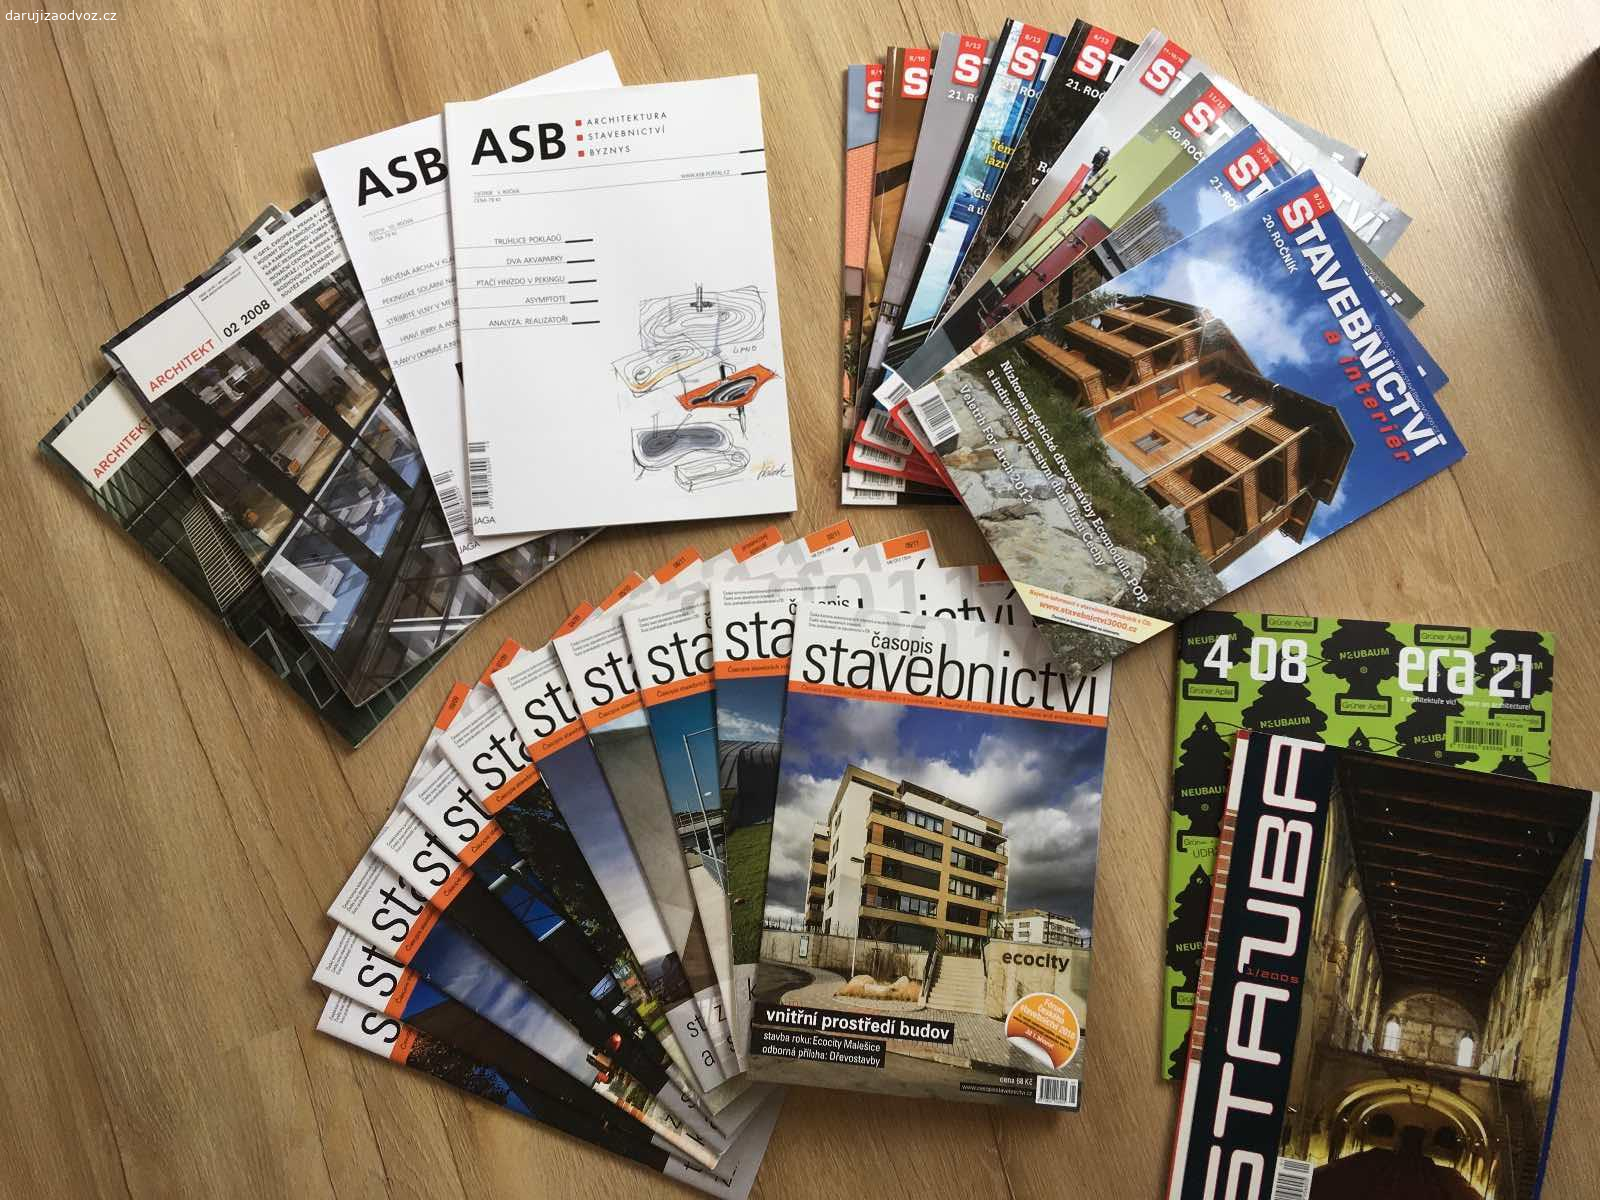 daruji časopisy. časopisy s tematikou stavebnictví a architektury, staré ročníky